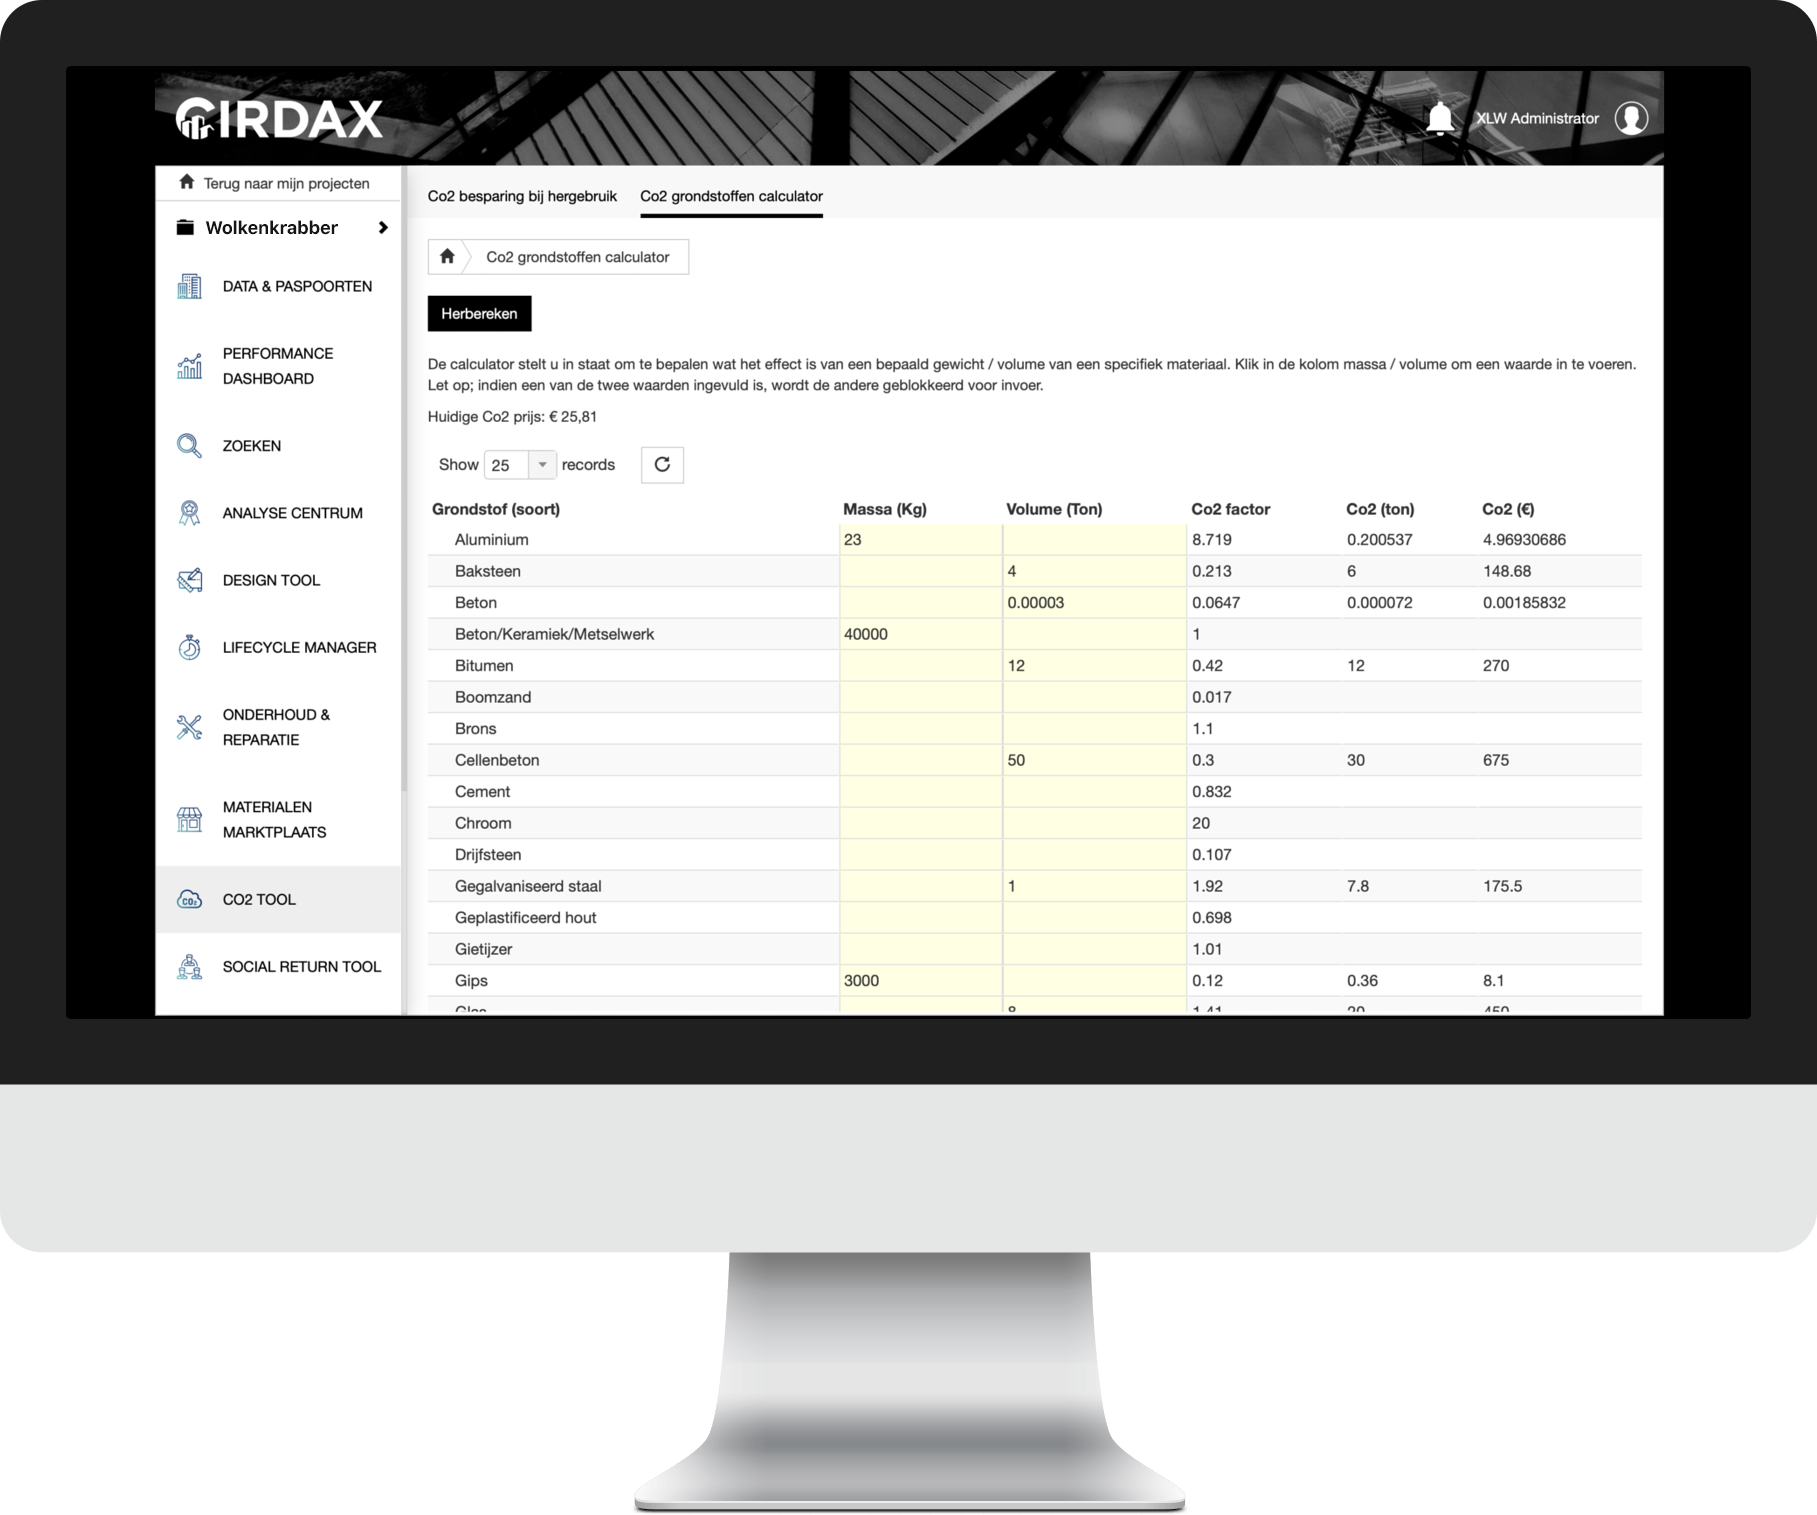 Cirdax materialen management software